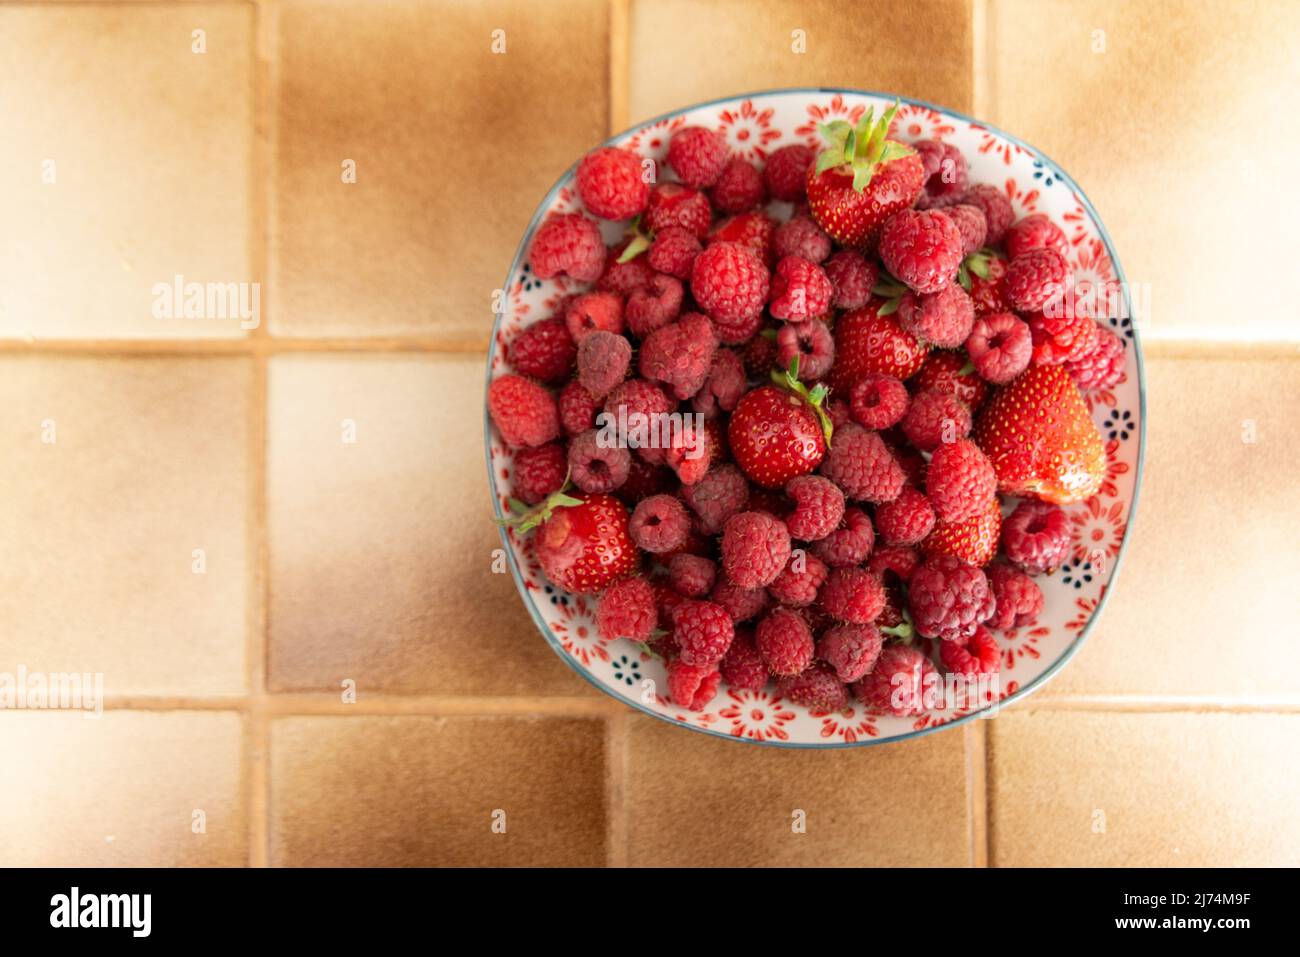 Oben und große Ansicht eines Tellers mit frischen Erdbeeren und Himbeeren in einer Küche, die auf einem beigefarbenen Bodenfliesen ausgelegt ist Stockfoto